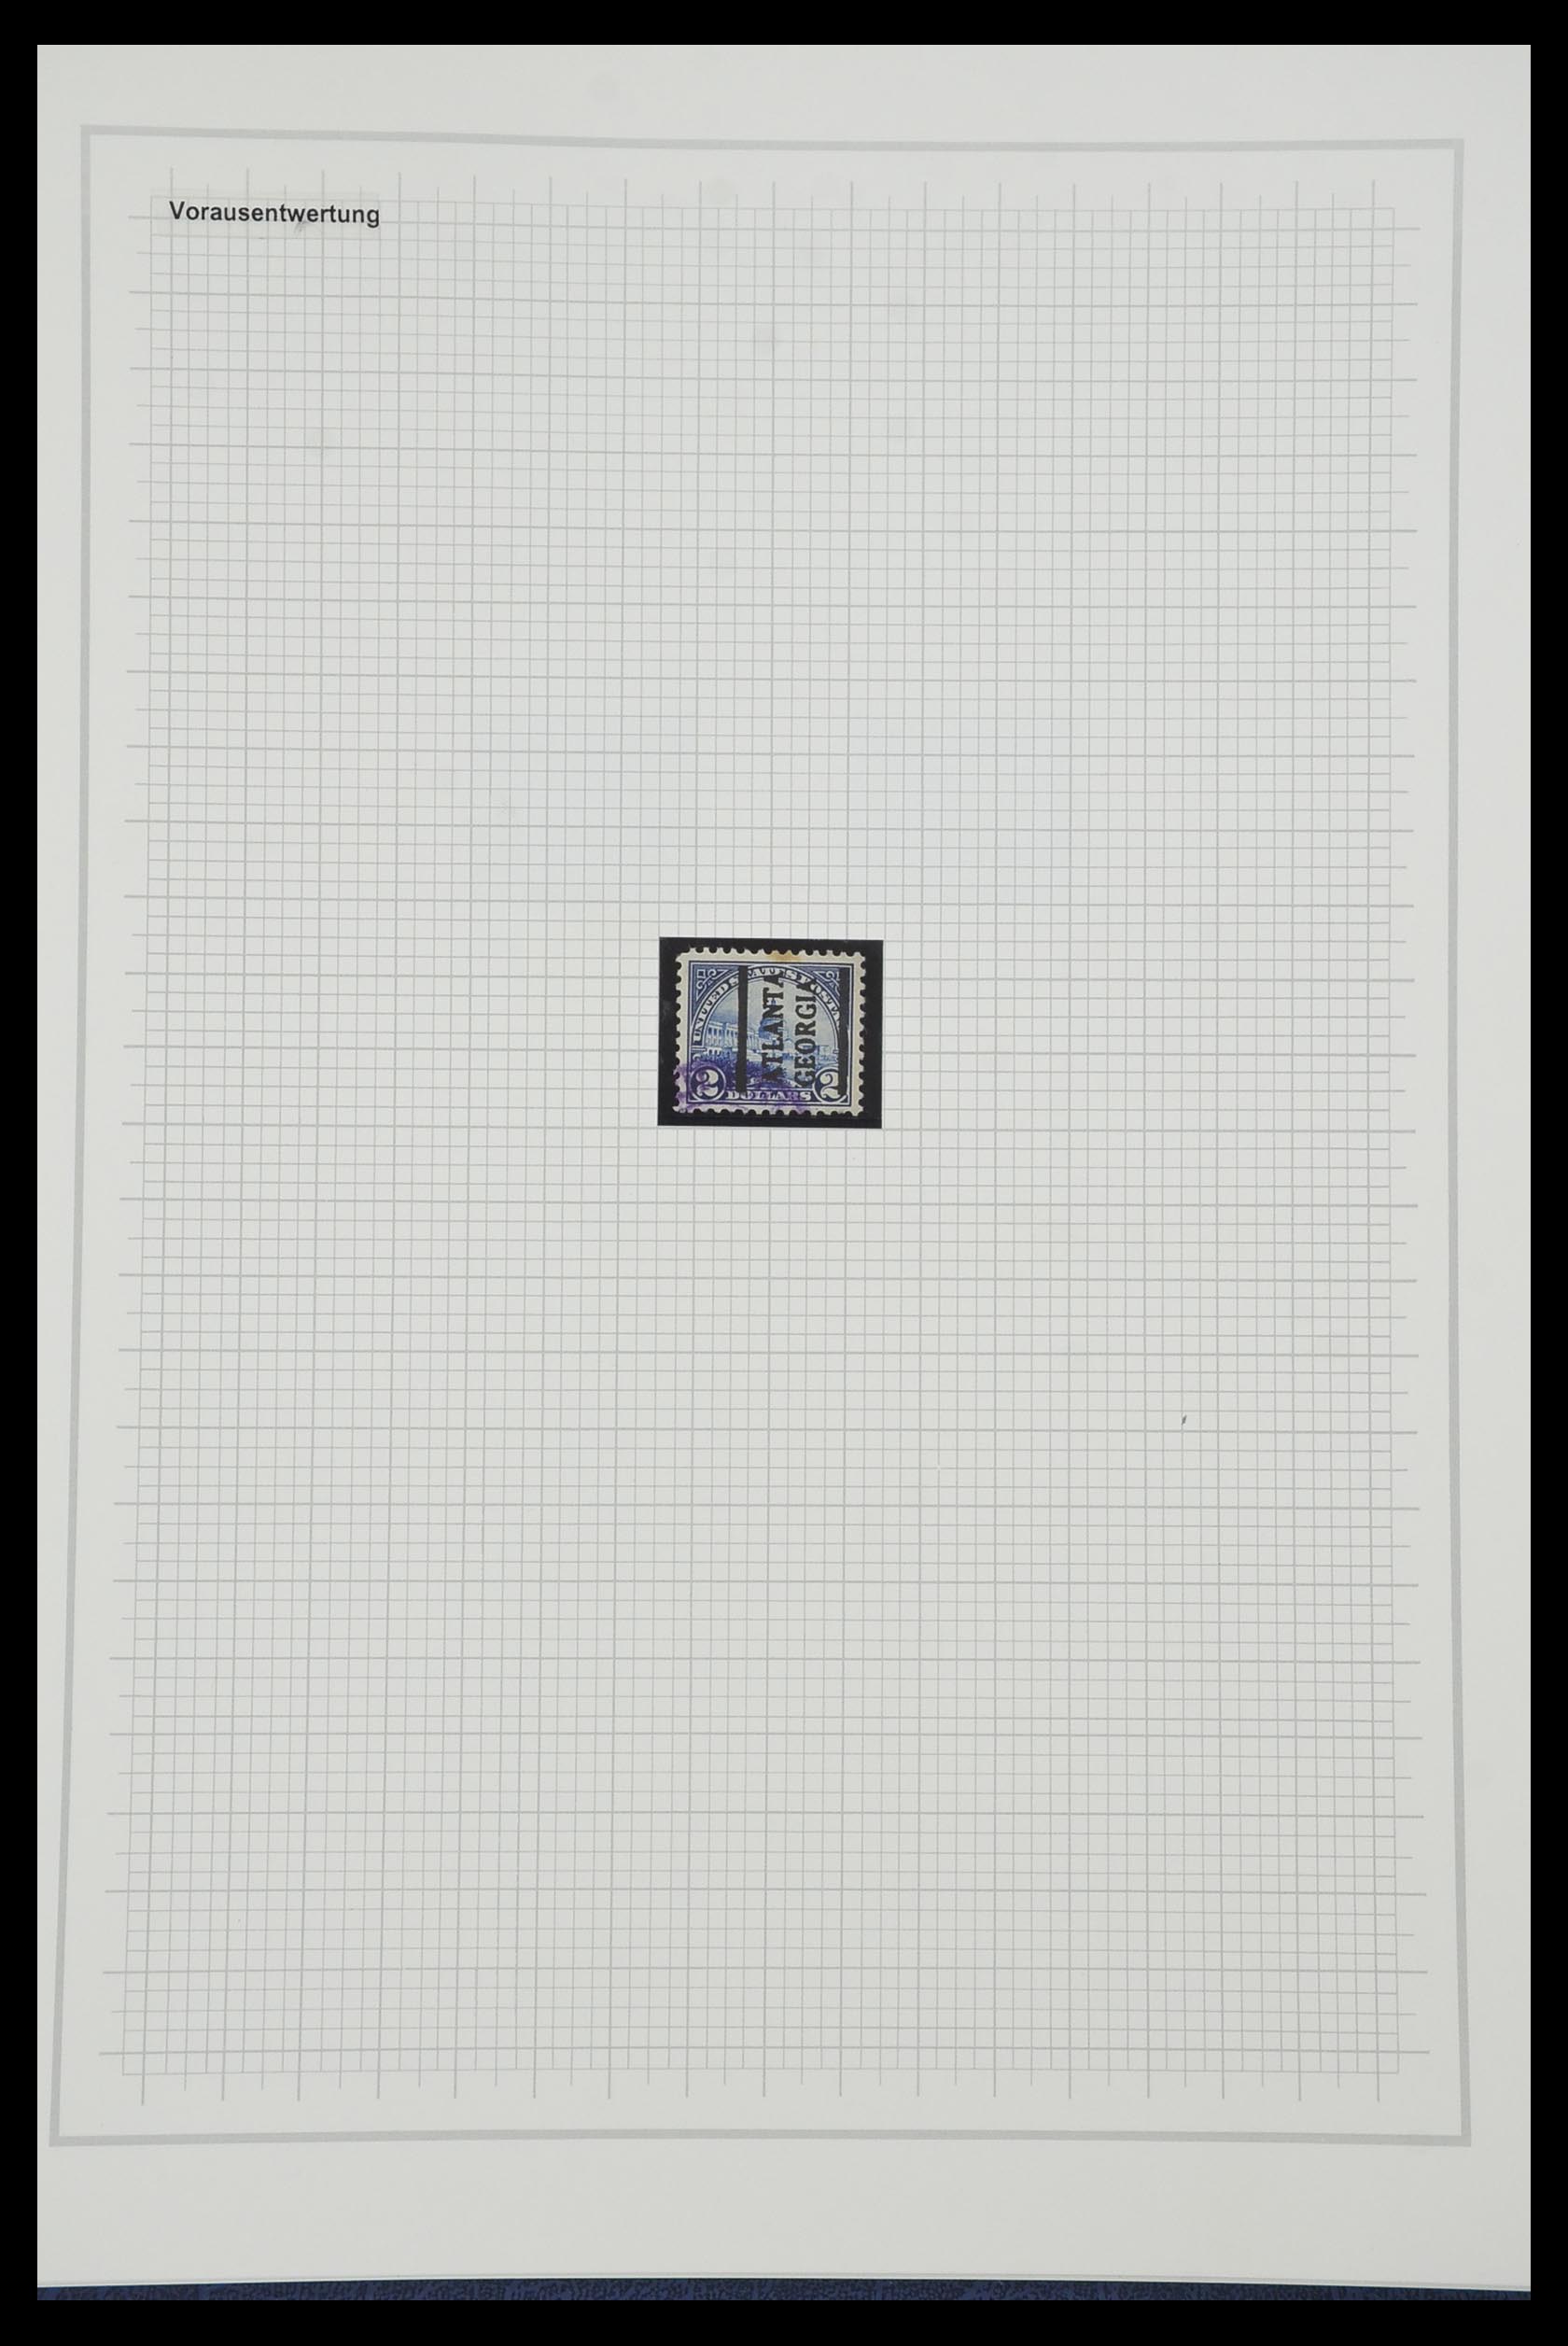 34309 539 - Stamp collection 34309 USA 1922-1934.